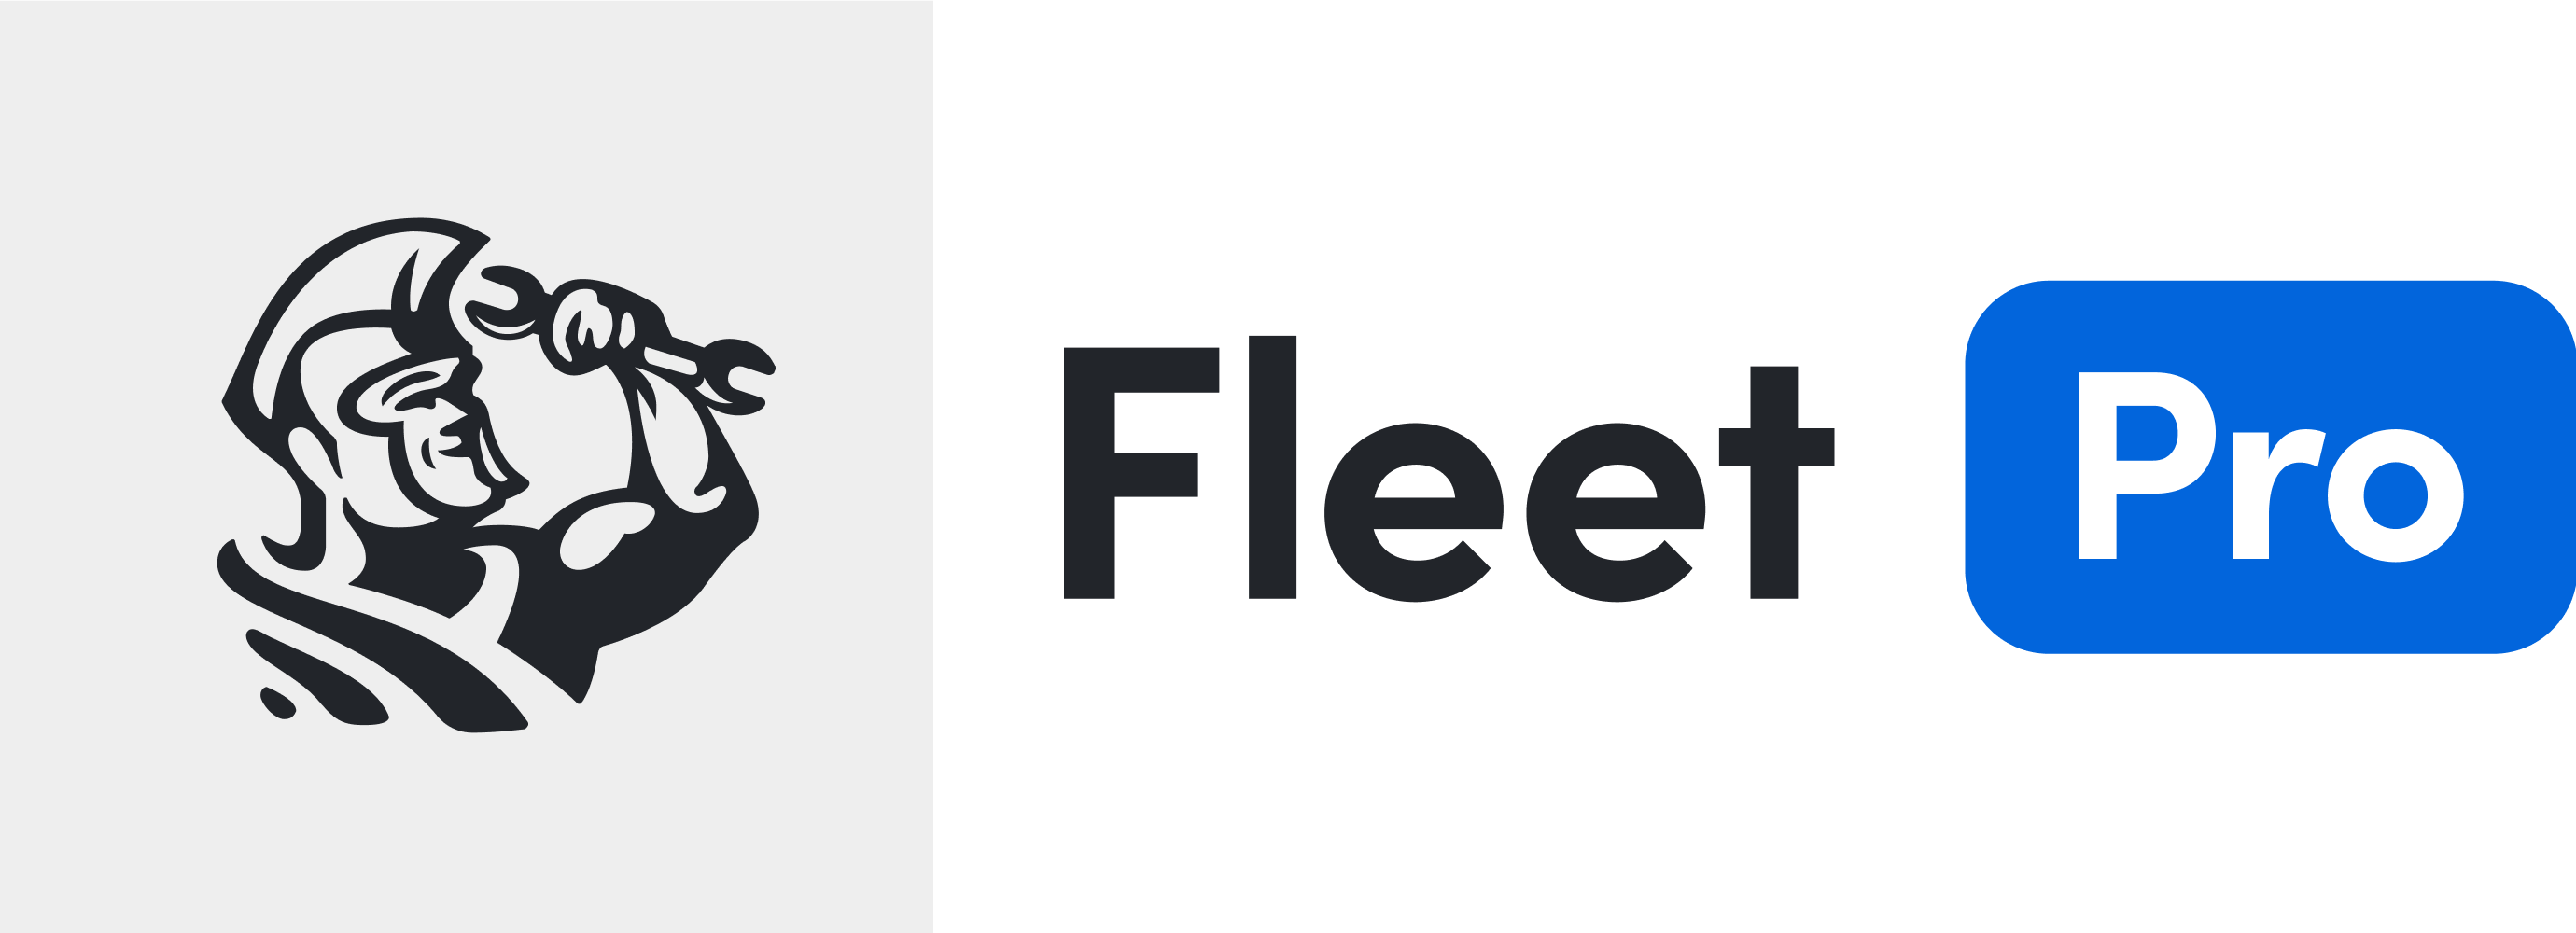 Fleet Pro